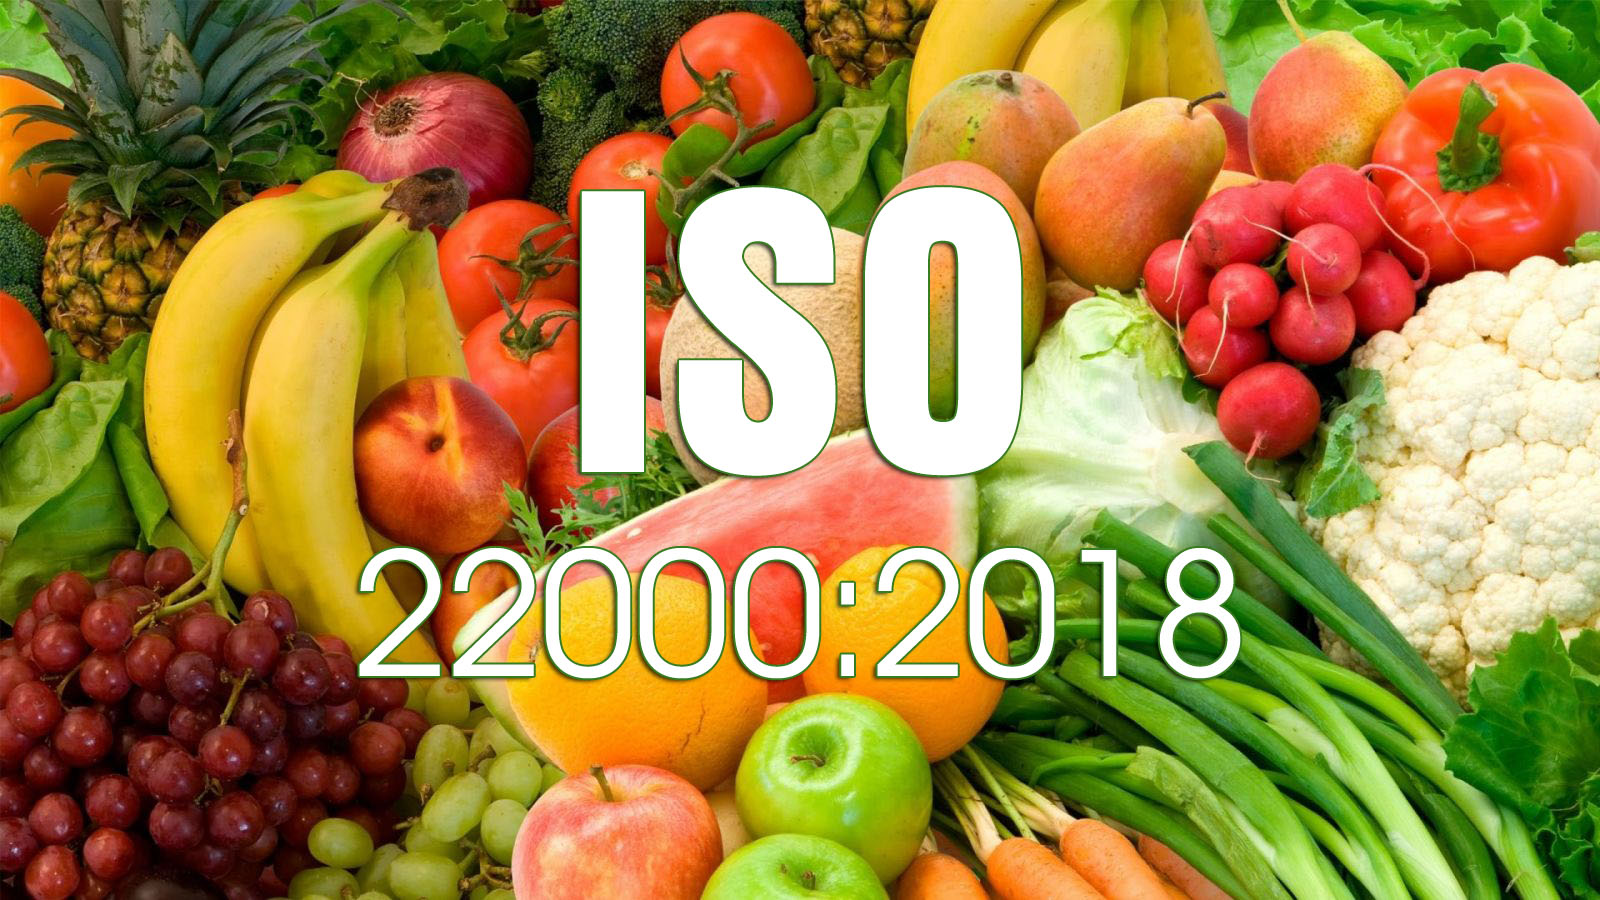 Quy trình tư vấn chứng nhận ISO 22000:2018/HACCP đầy đủ